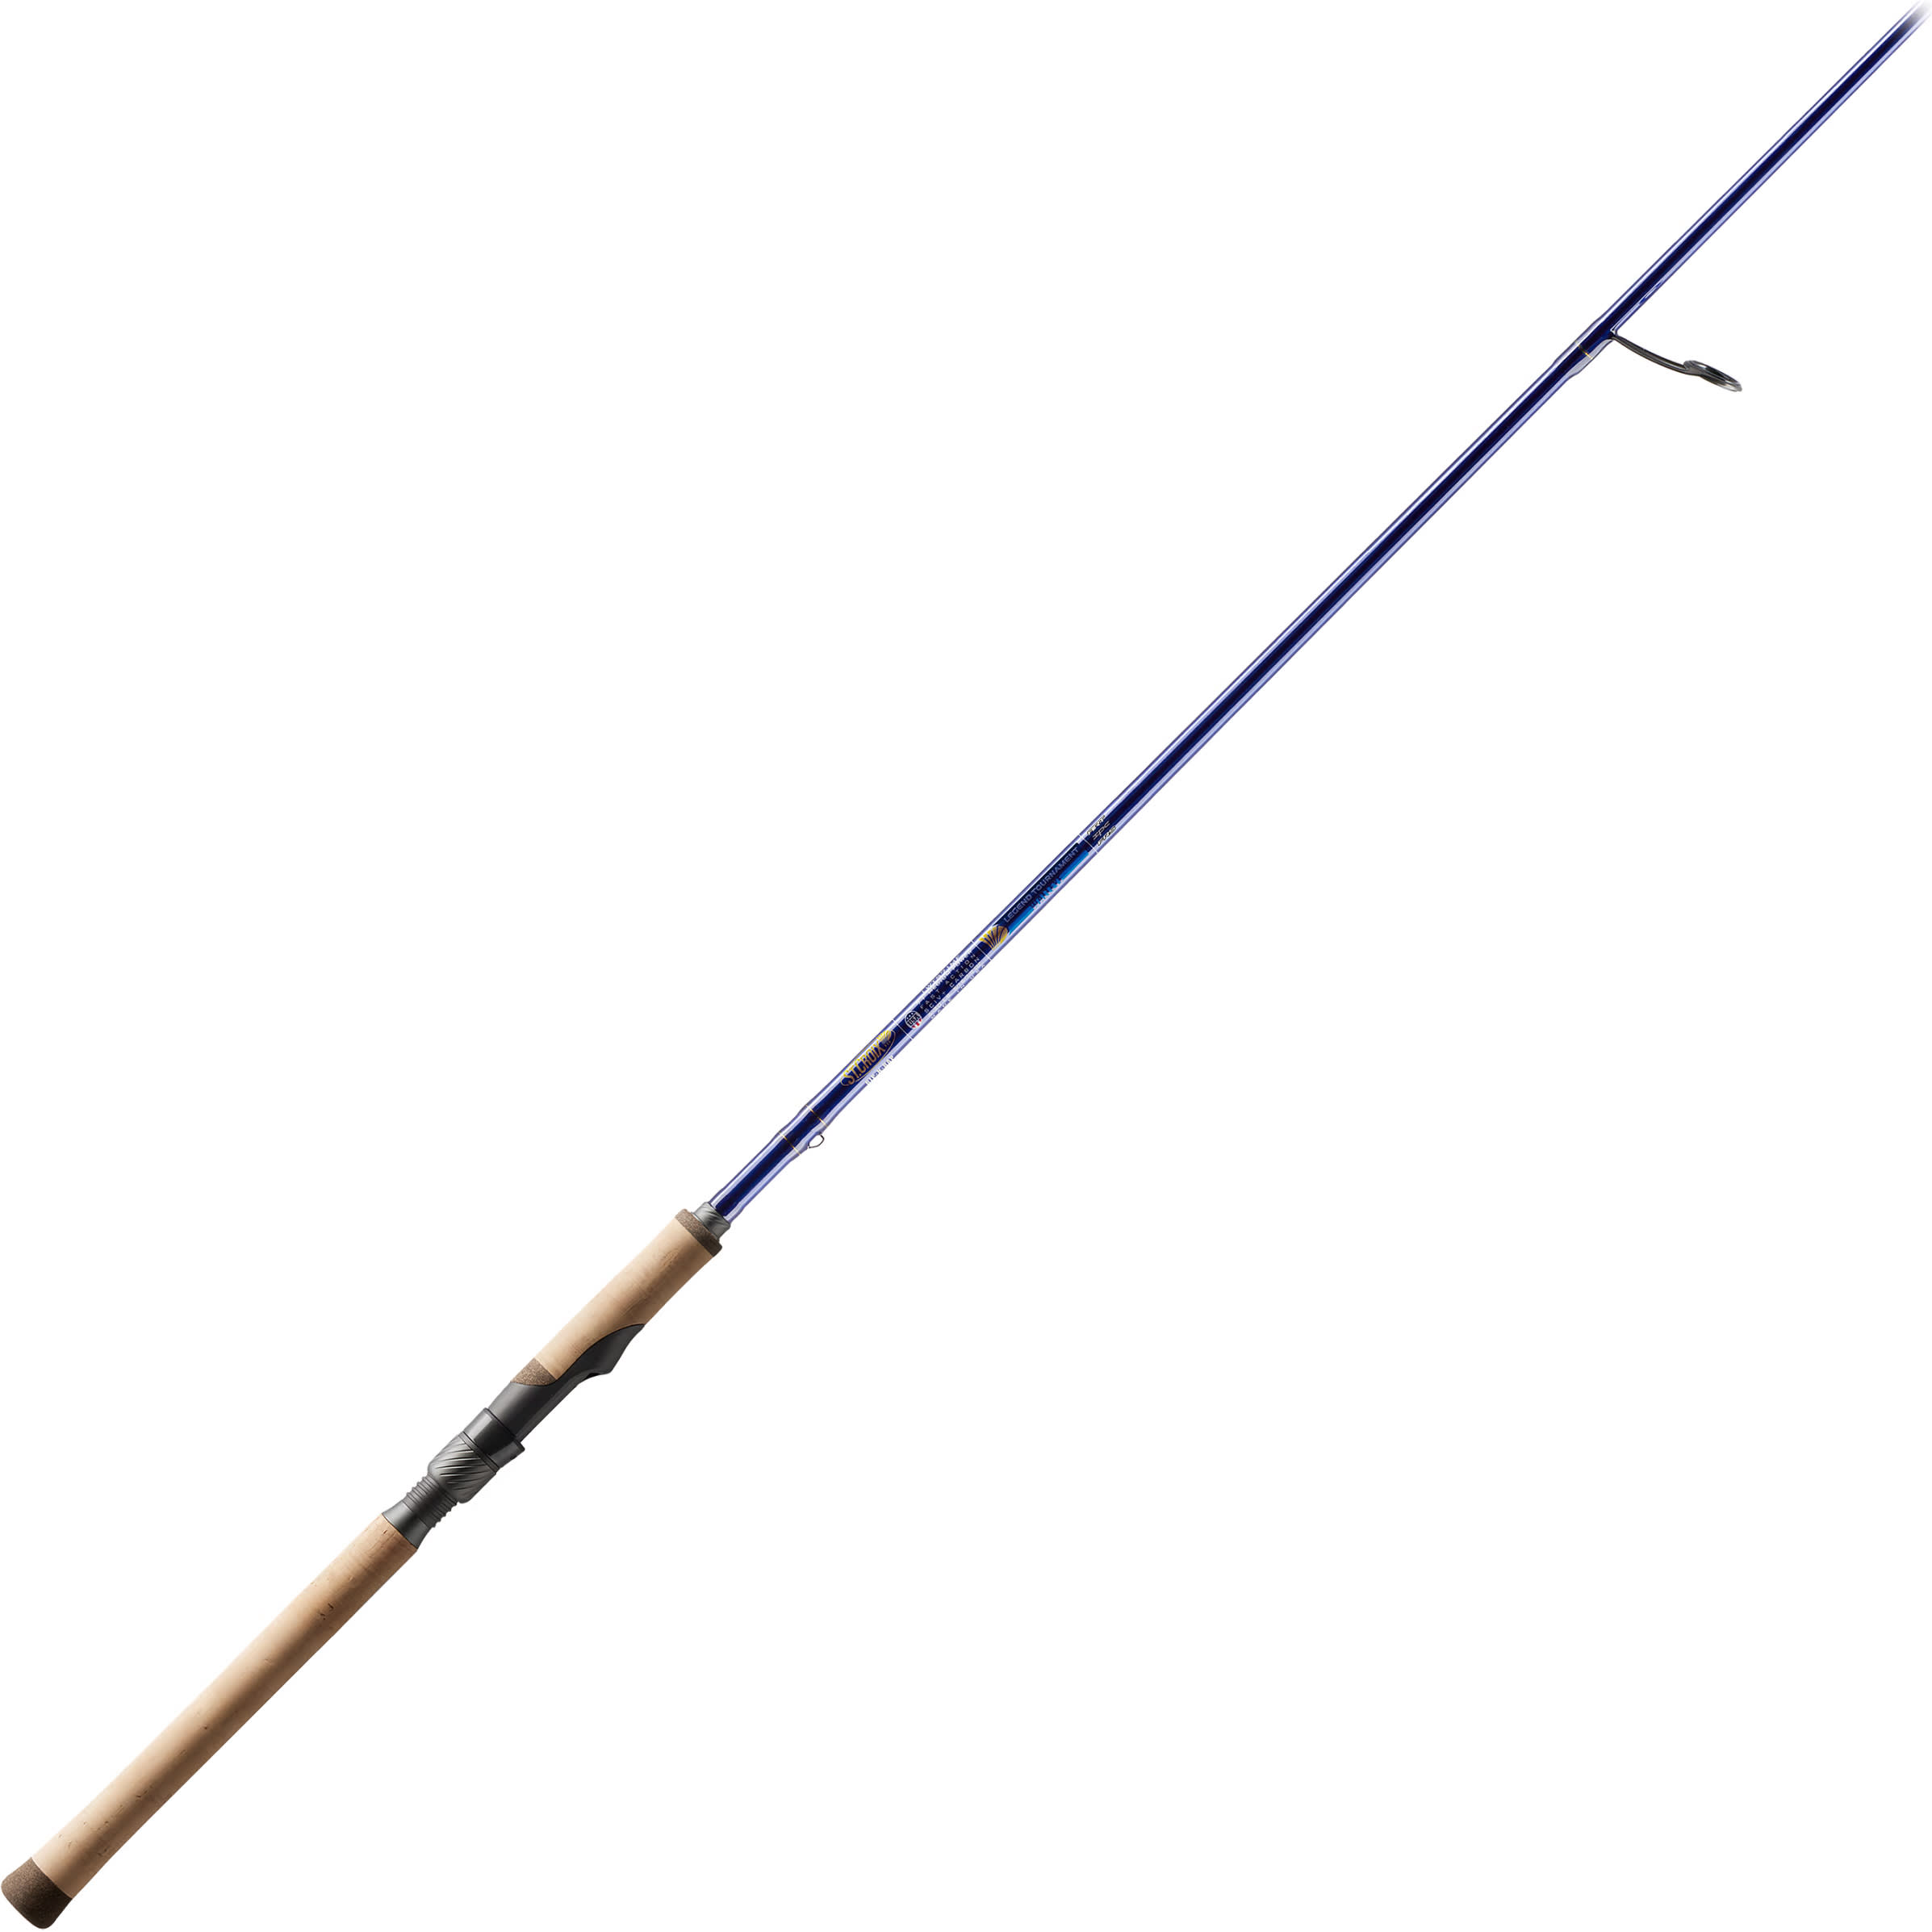 St. Croix® Legend Tournament Walleye Spinning Rod